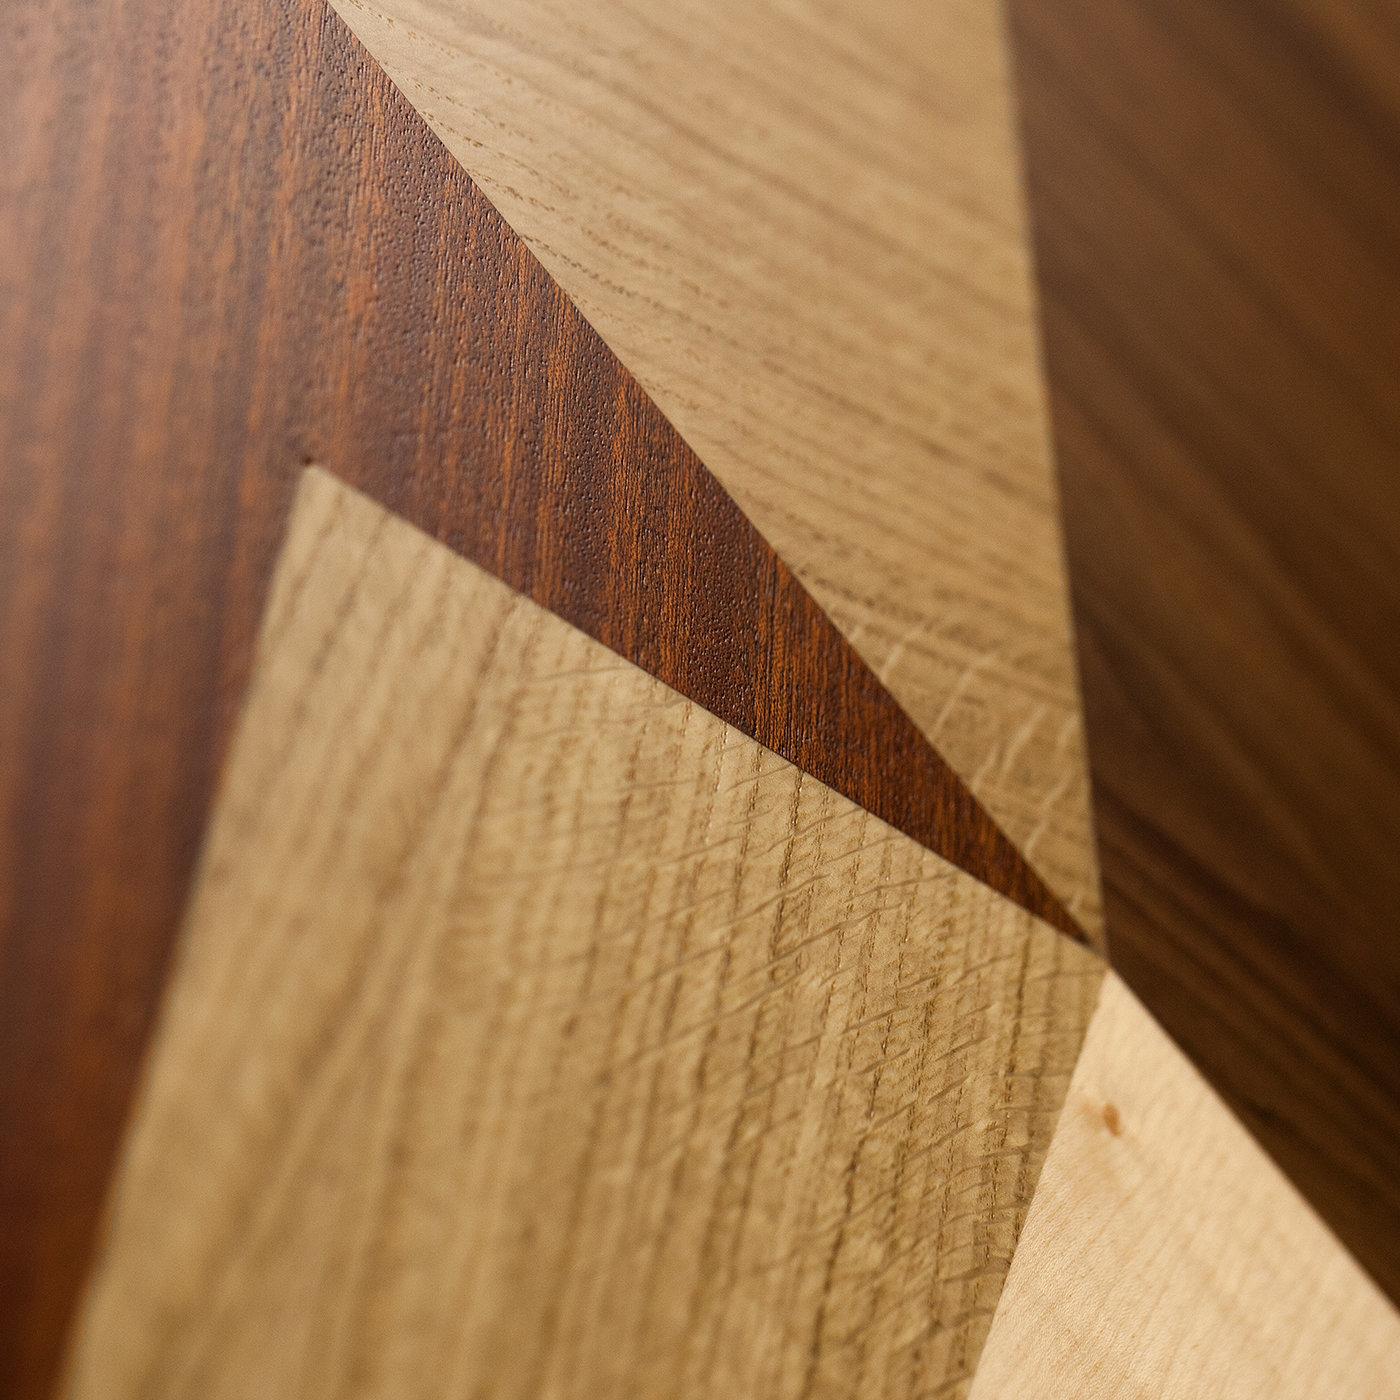 Eine Geometrie aus harmonischen Linien, die durch wertvolle Holzintarsien geschaffen wird, macht das abstrakte Muster dieses Holzpaneels aus, das sich mühelos in ein modernes Interieur einfügen wird. Weißer Ahorn, europäische Eiche, Mahagoni,